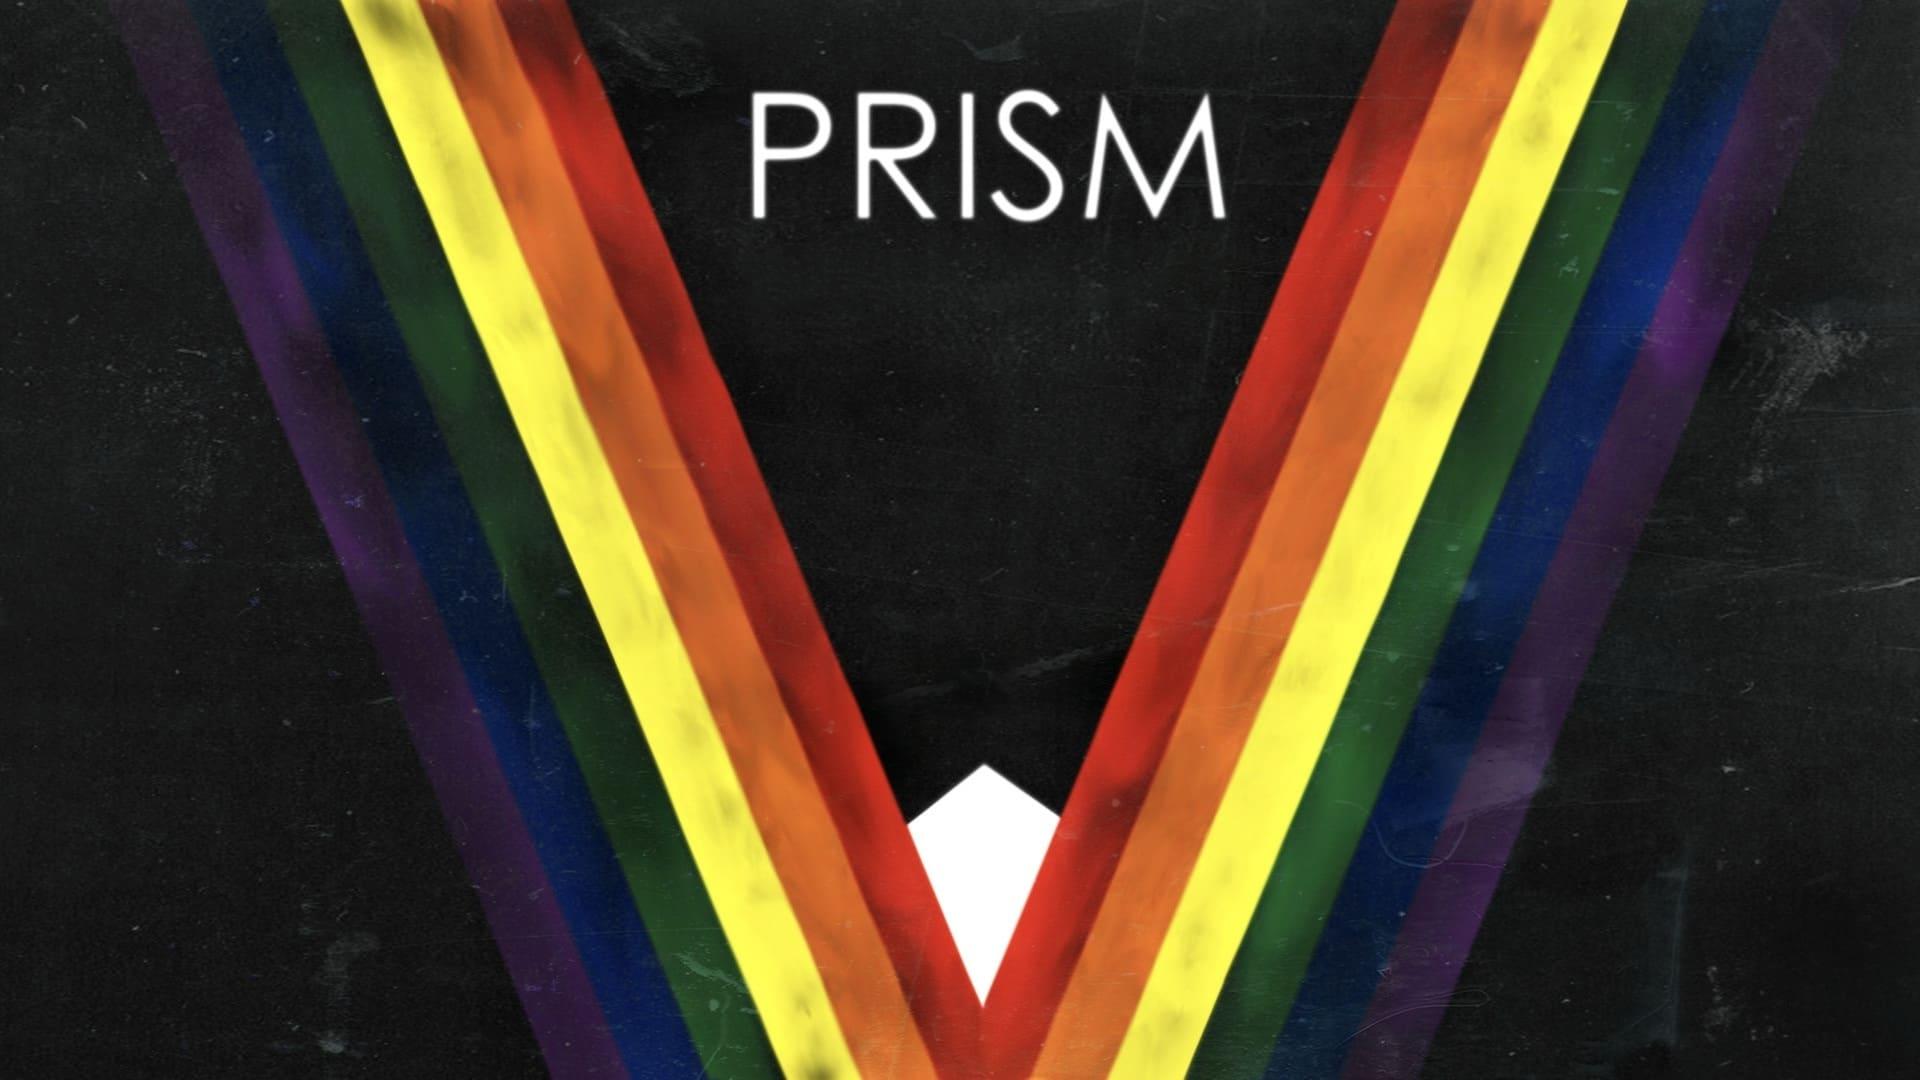 Prism backdrop